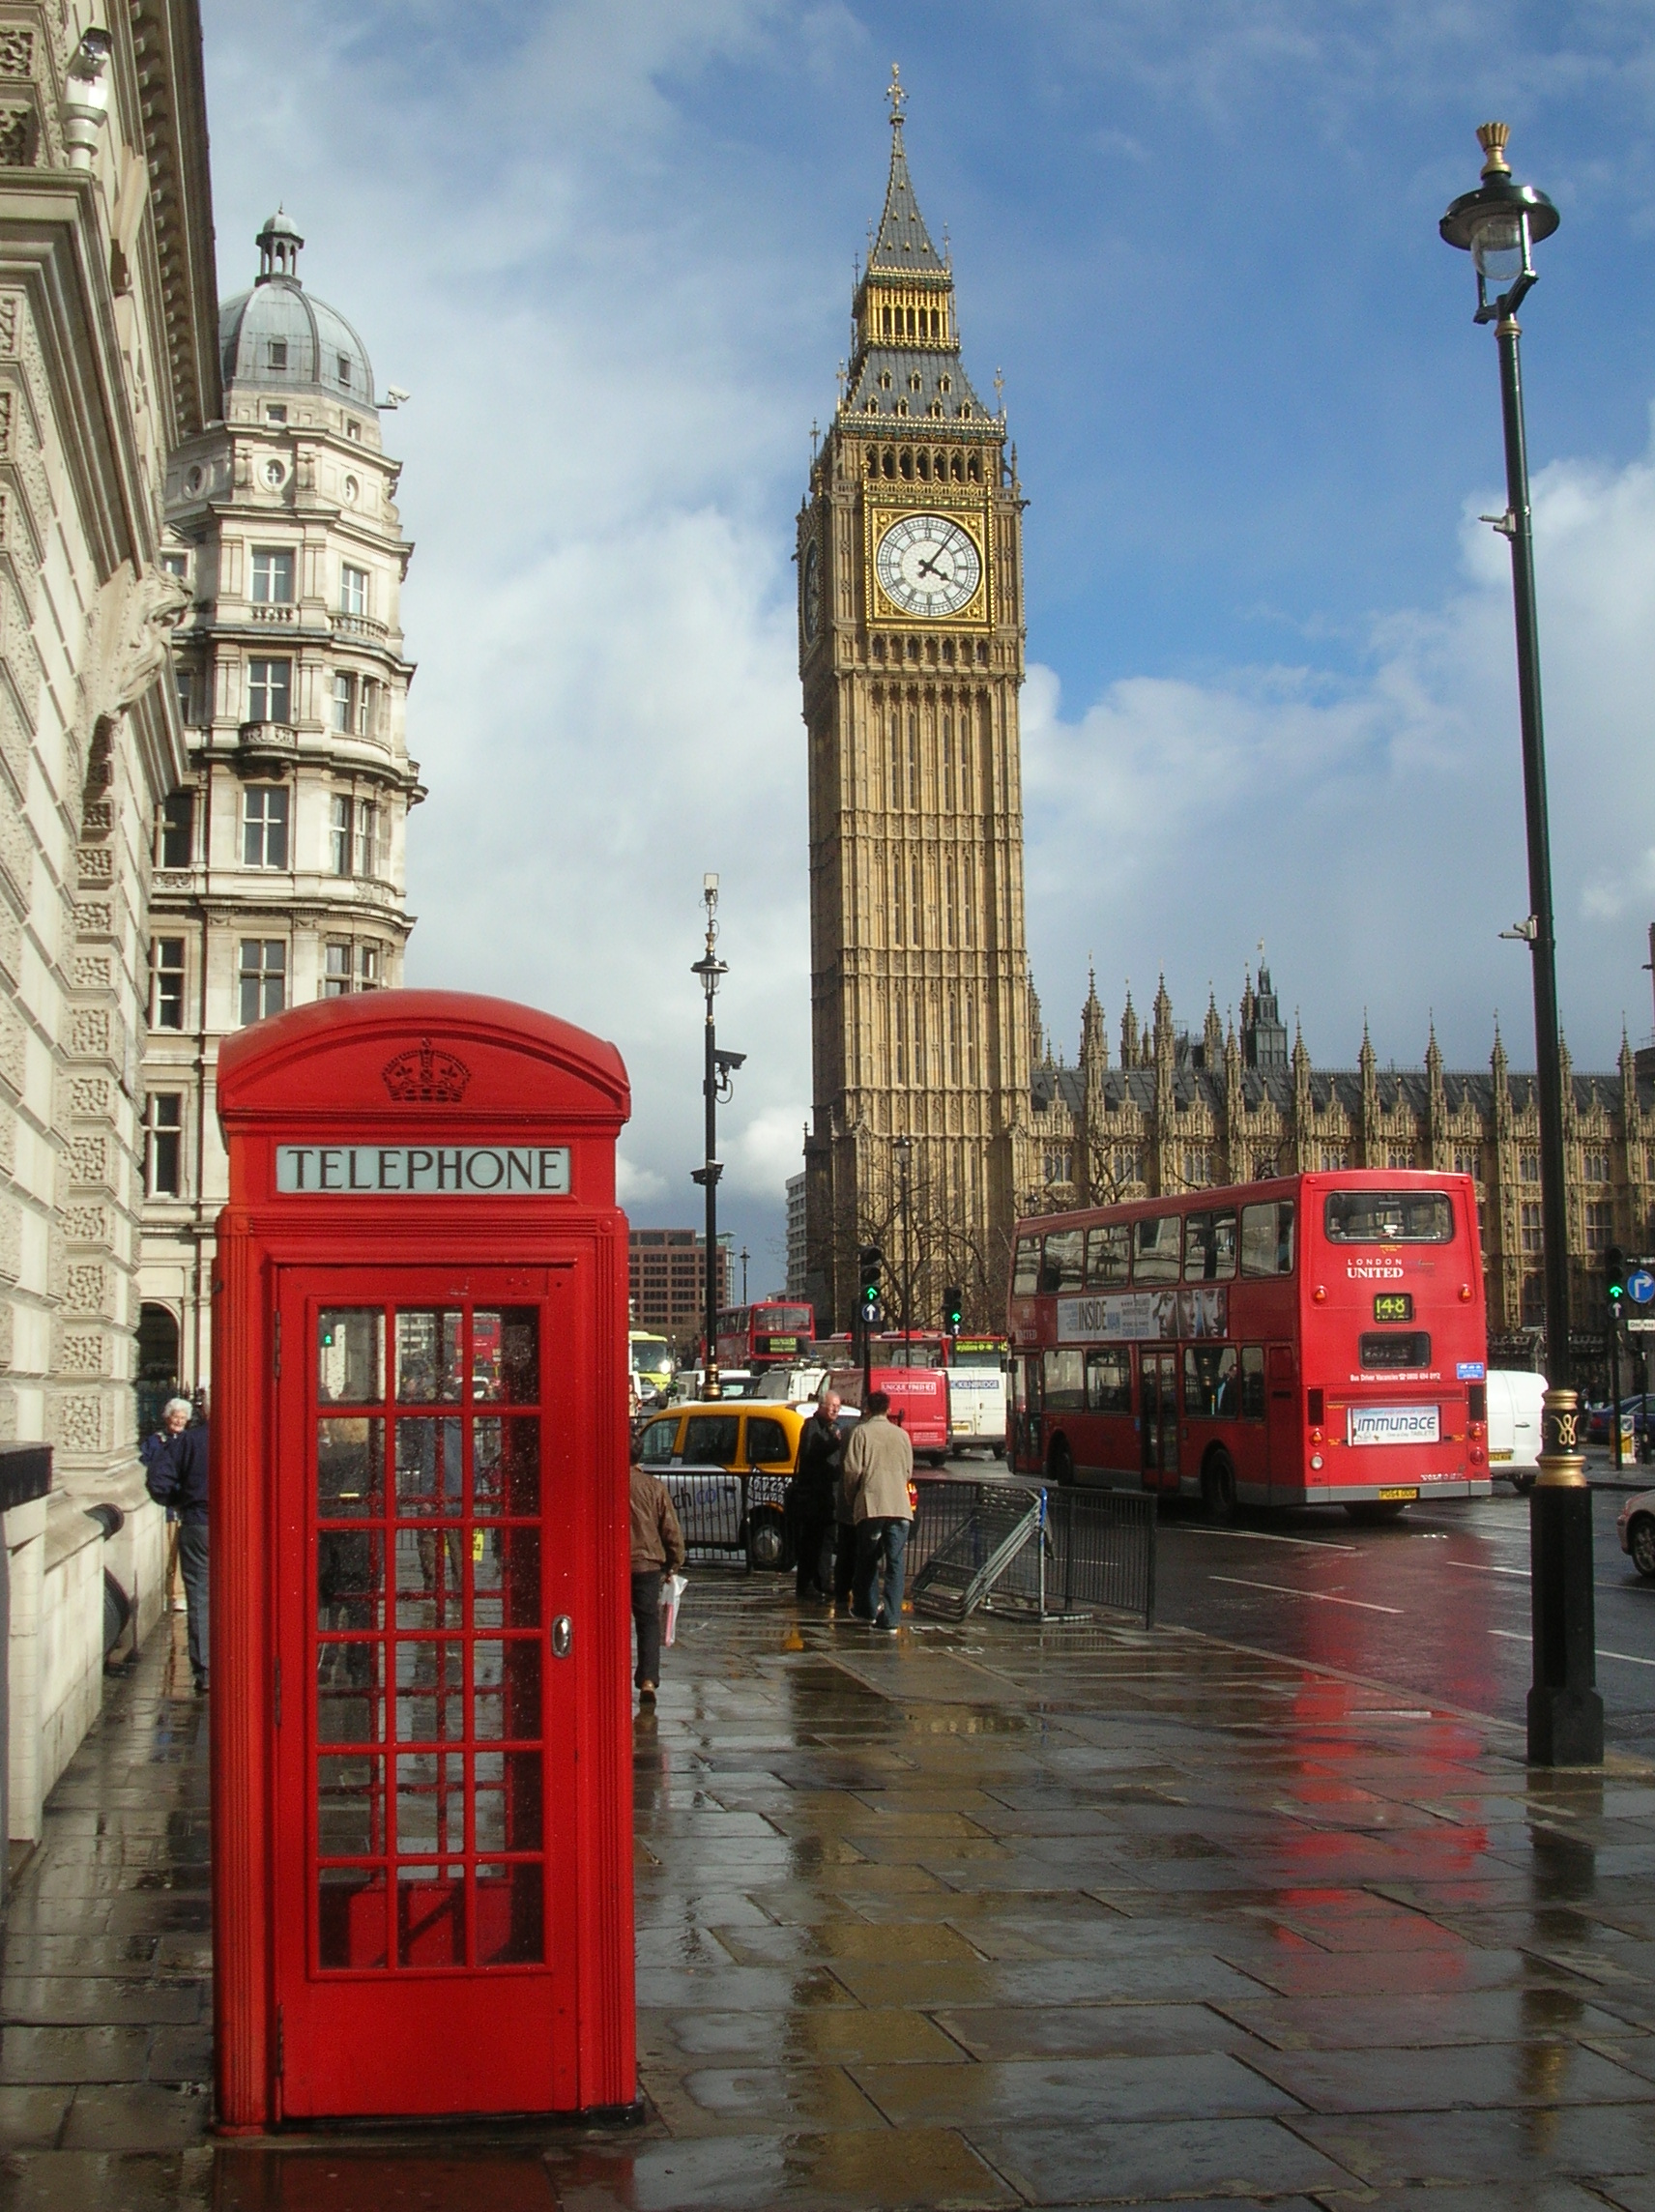 London Phone Box Bus